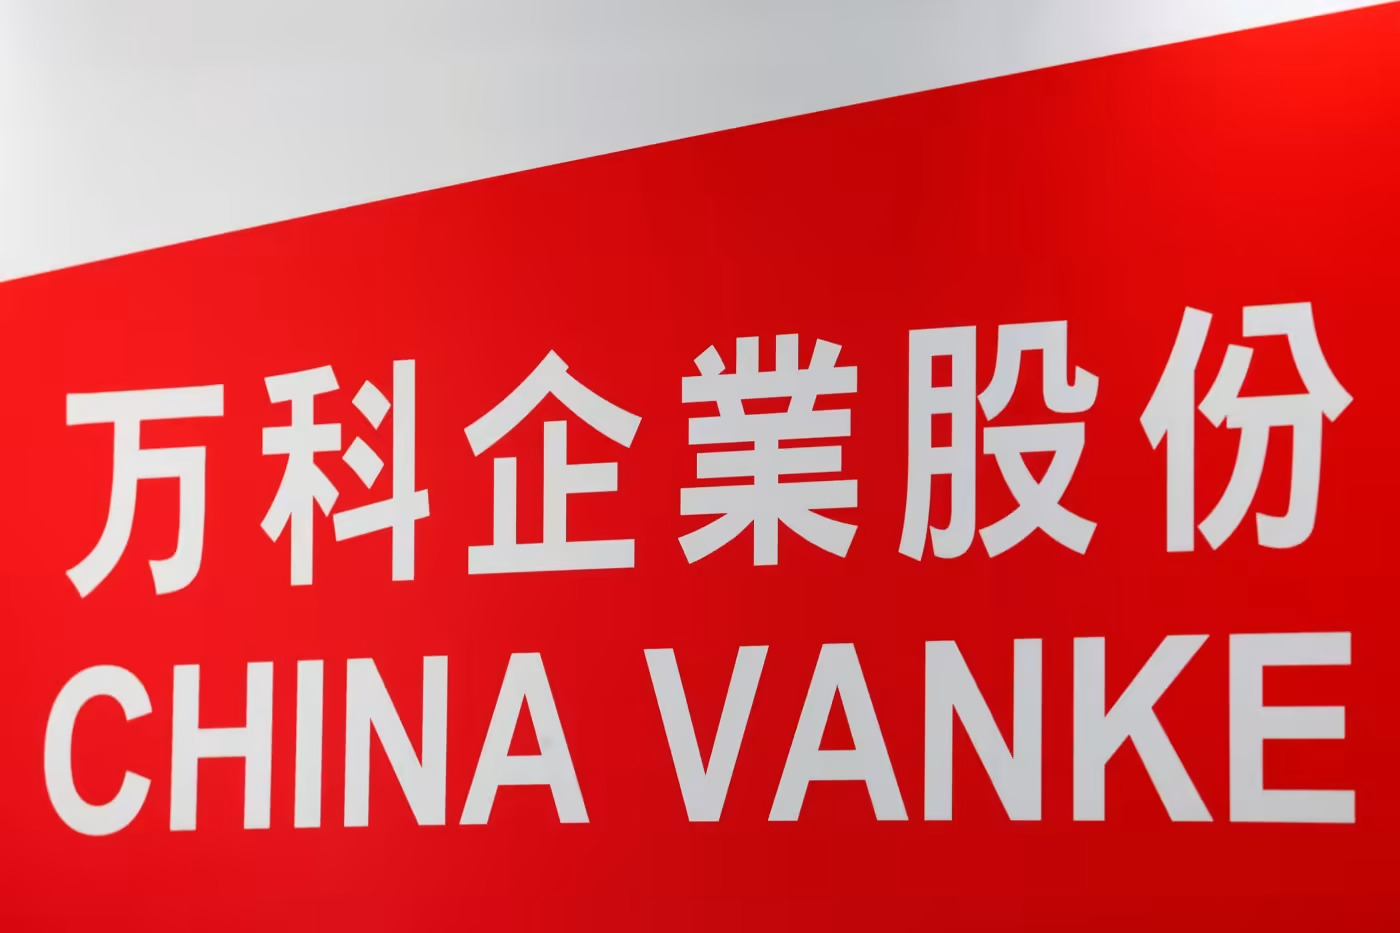 Đơn vị dịch vụ bất động sản Onewo của China Vanke đã tăng doanh thu 44,2%, lên 6,85 tỷ nhân dân tệ, trong quý đầu tiên của năm 2022. © Reuters